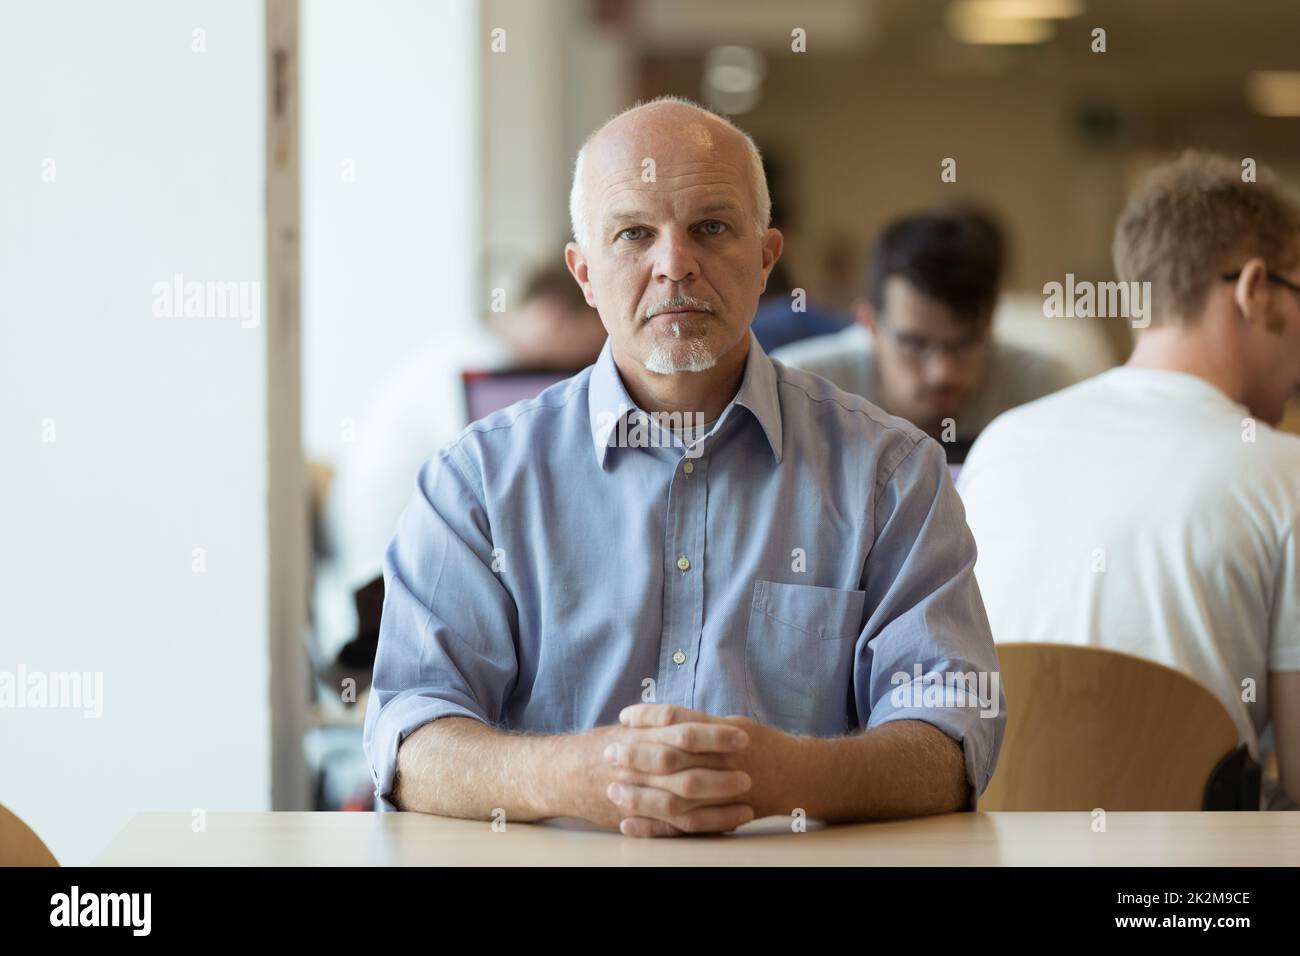 Un homme important assis seul dans une cafétéria Banque D'Images